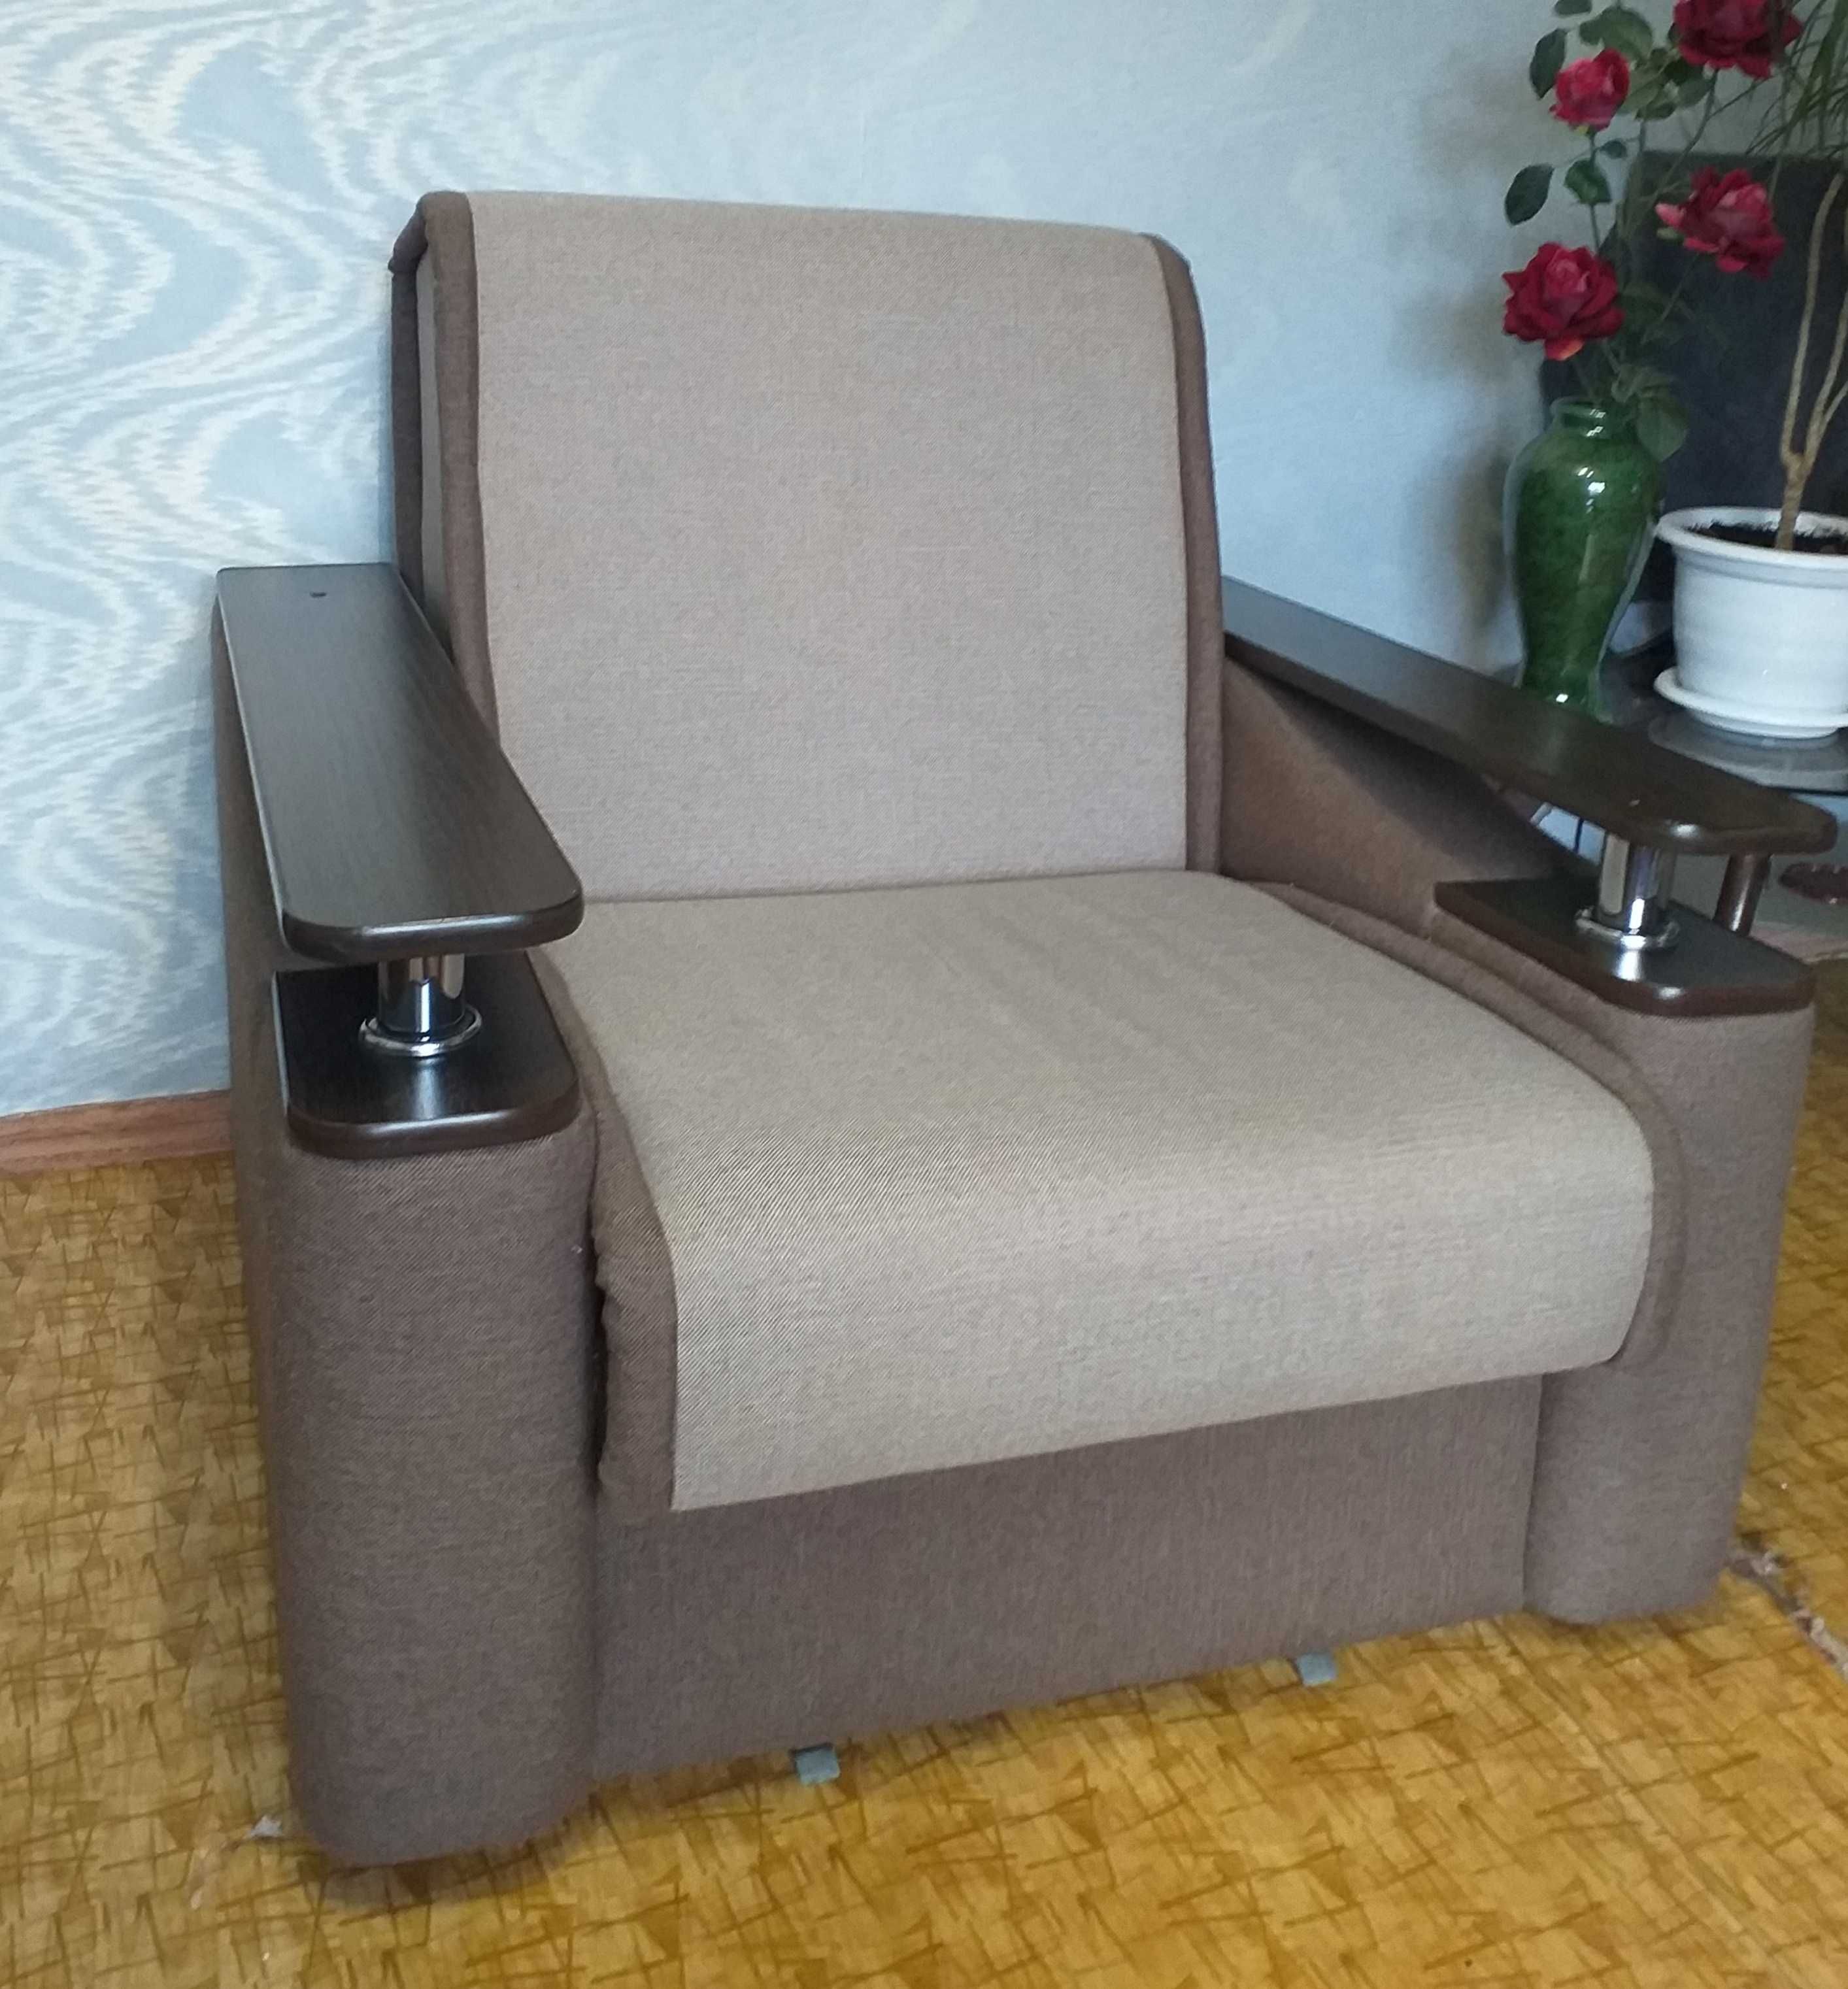 Мягкая мебель диван и кресло